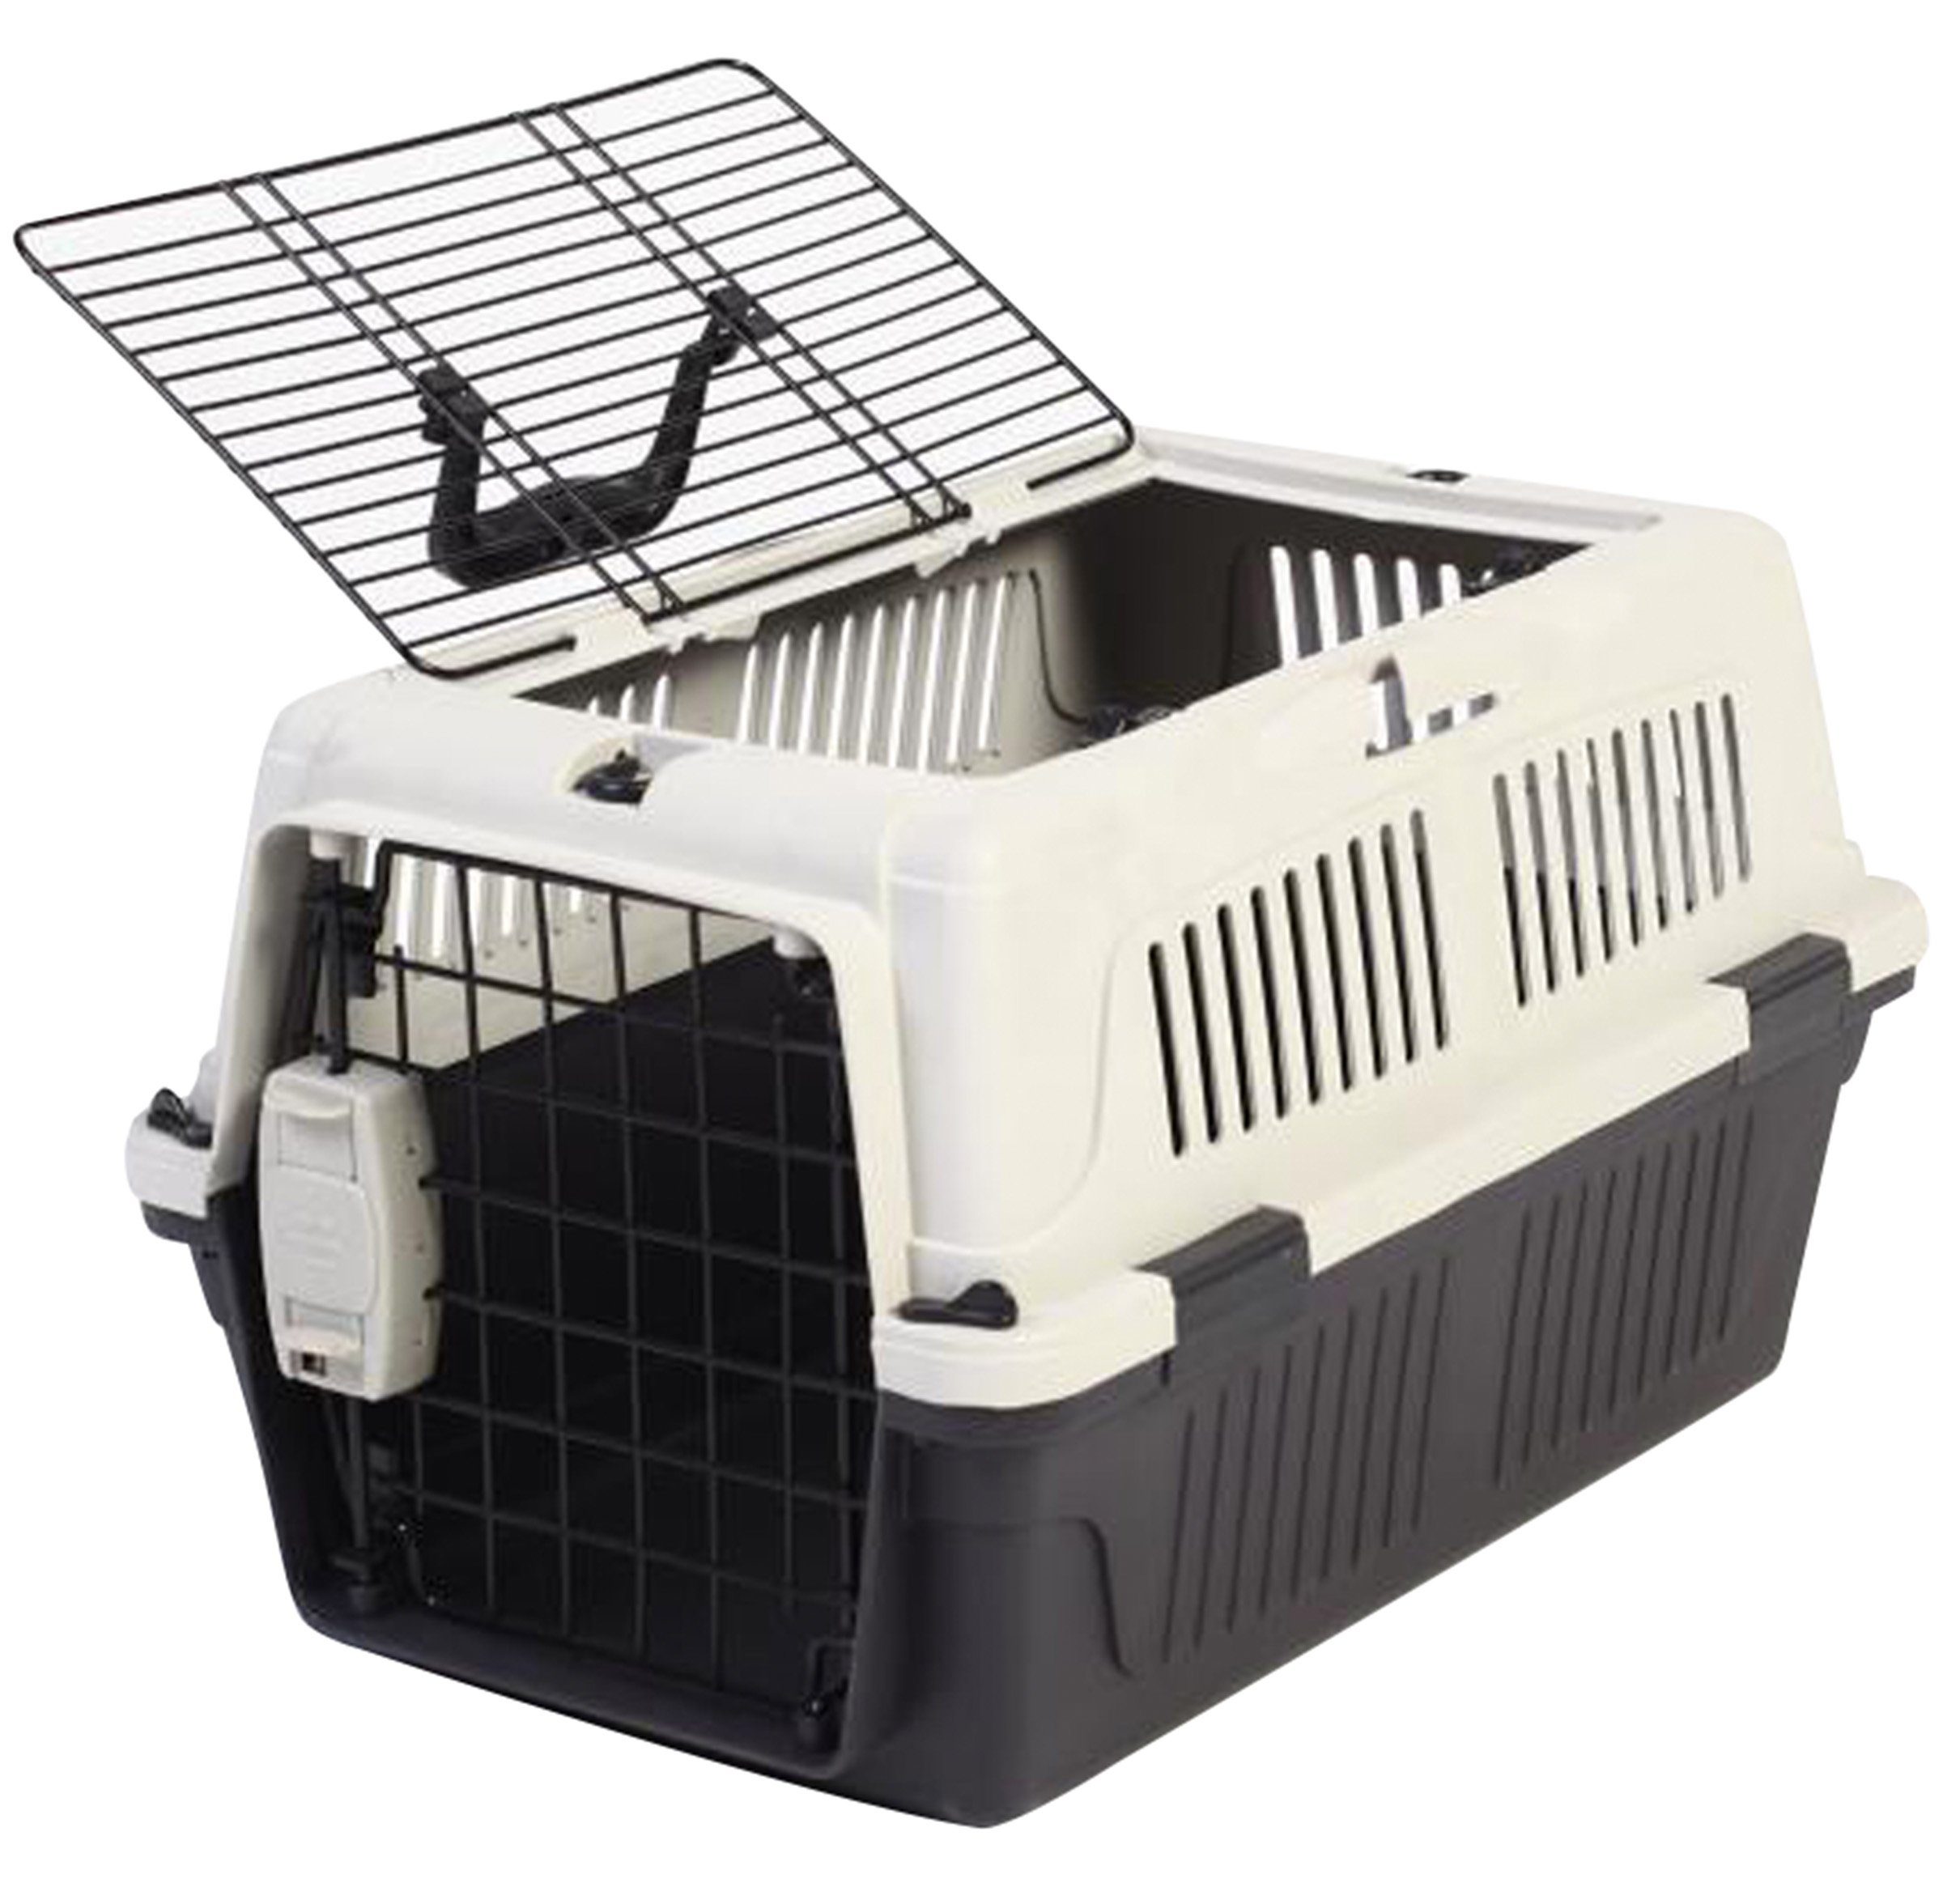 Transportbox für Haustiere Grau und Schwarz 61x40x38 cm PP